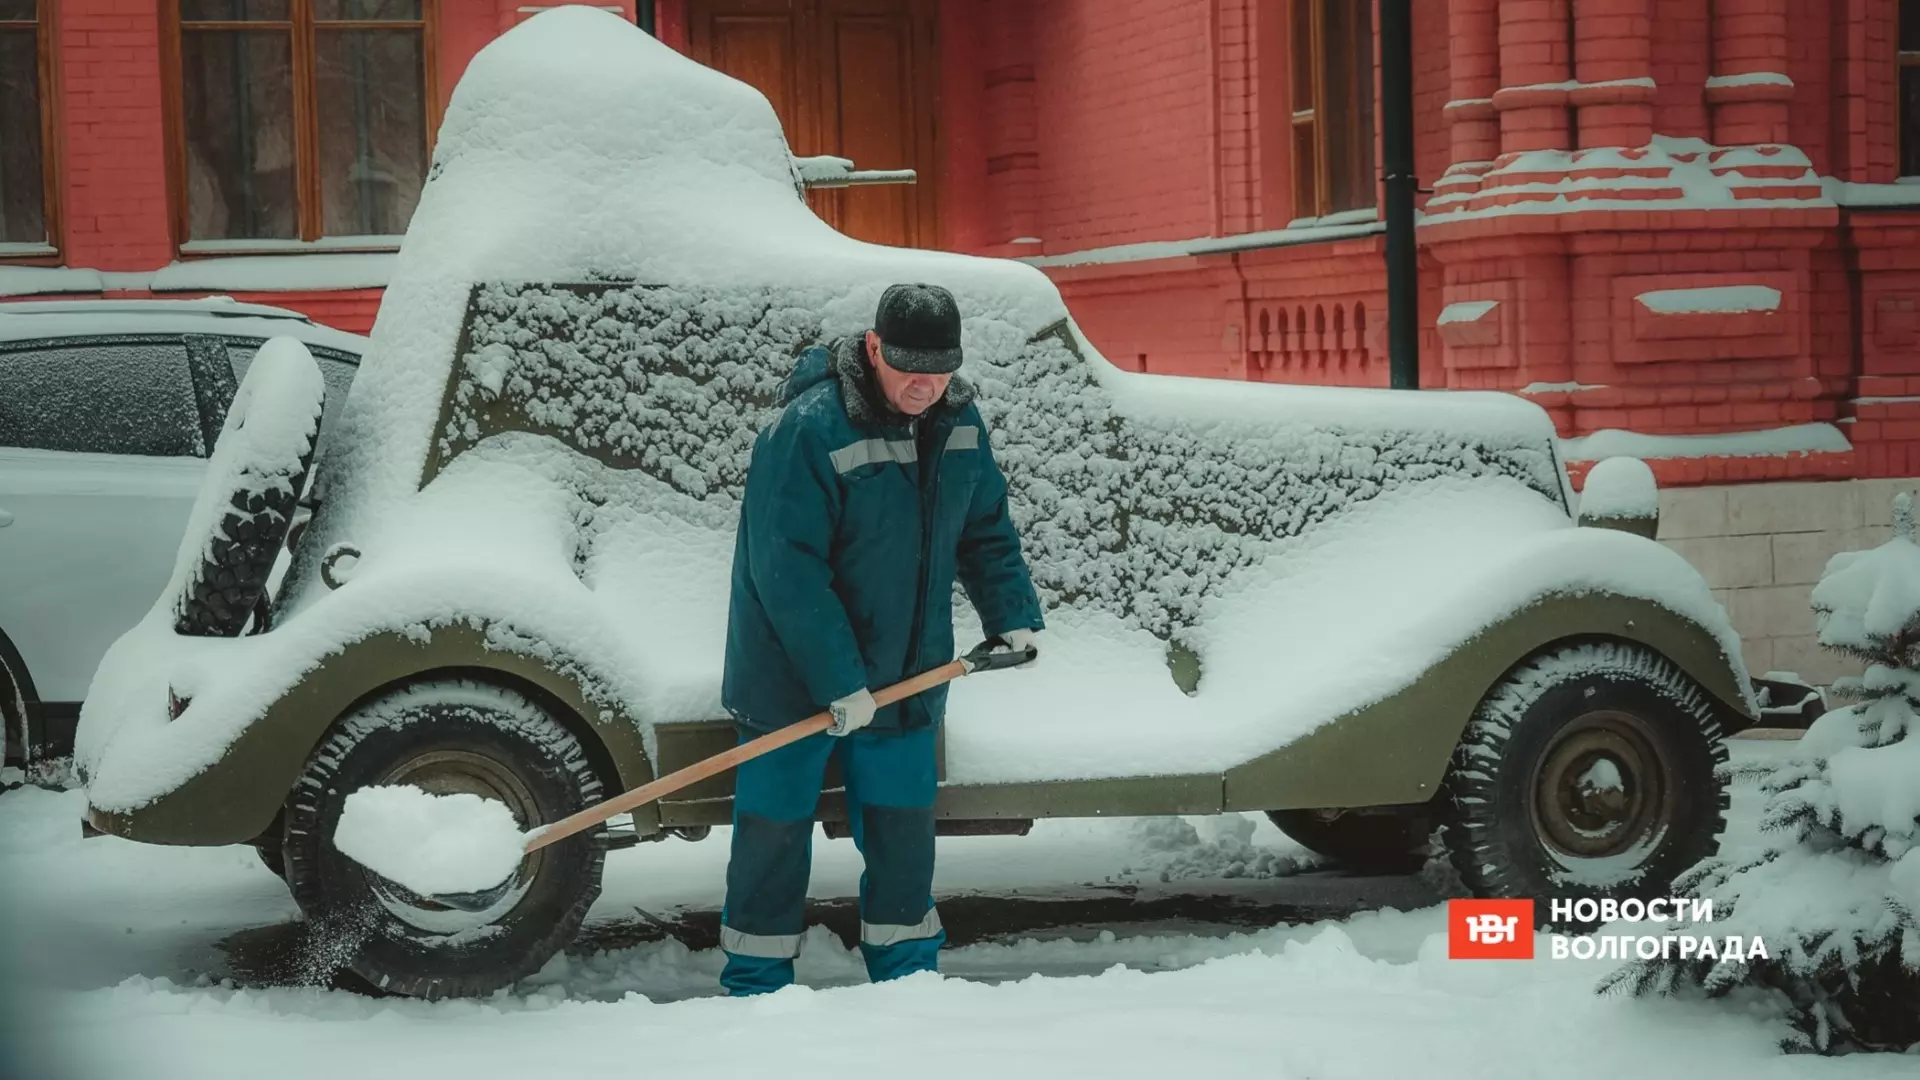 Очищать машину от снега нужно правильно